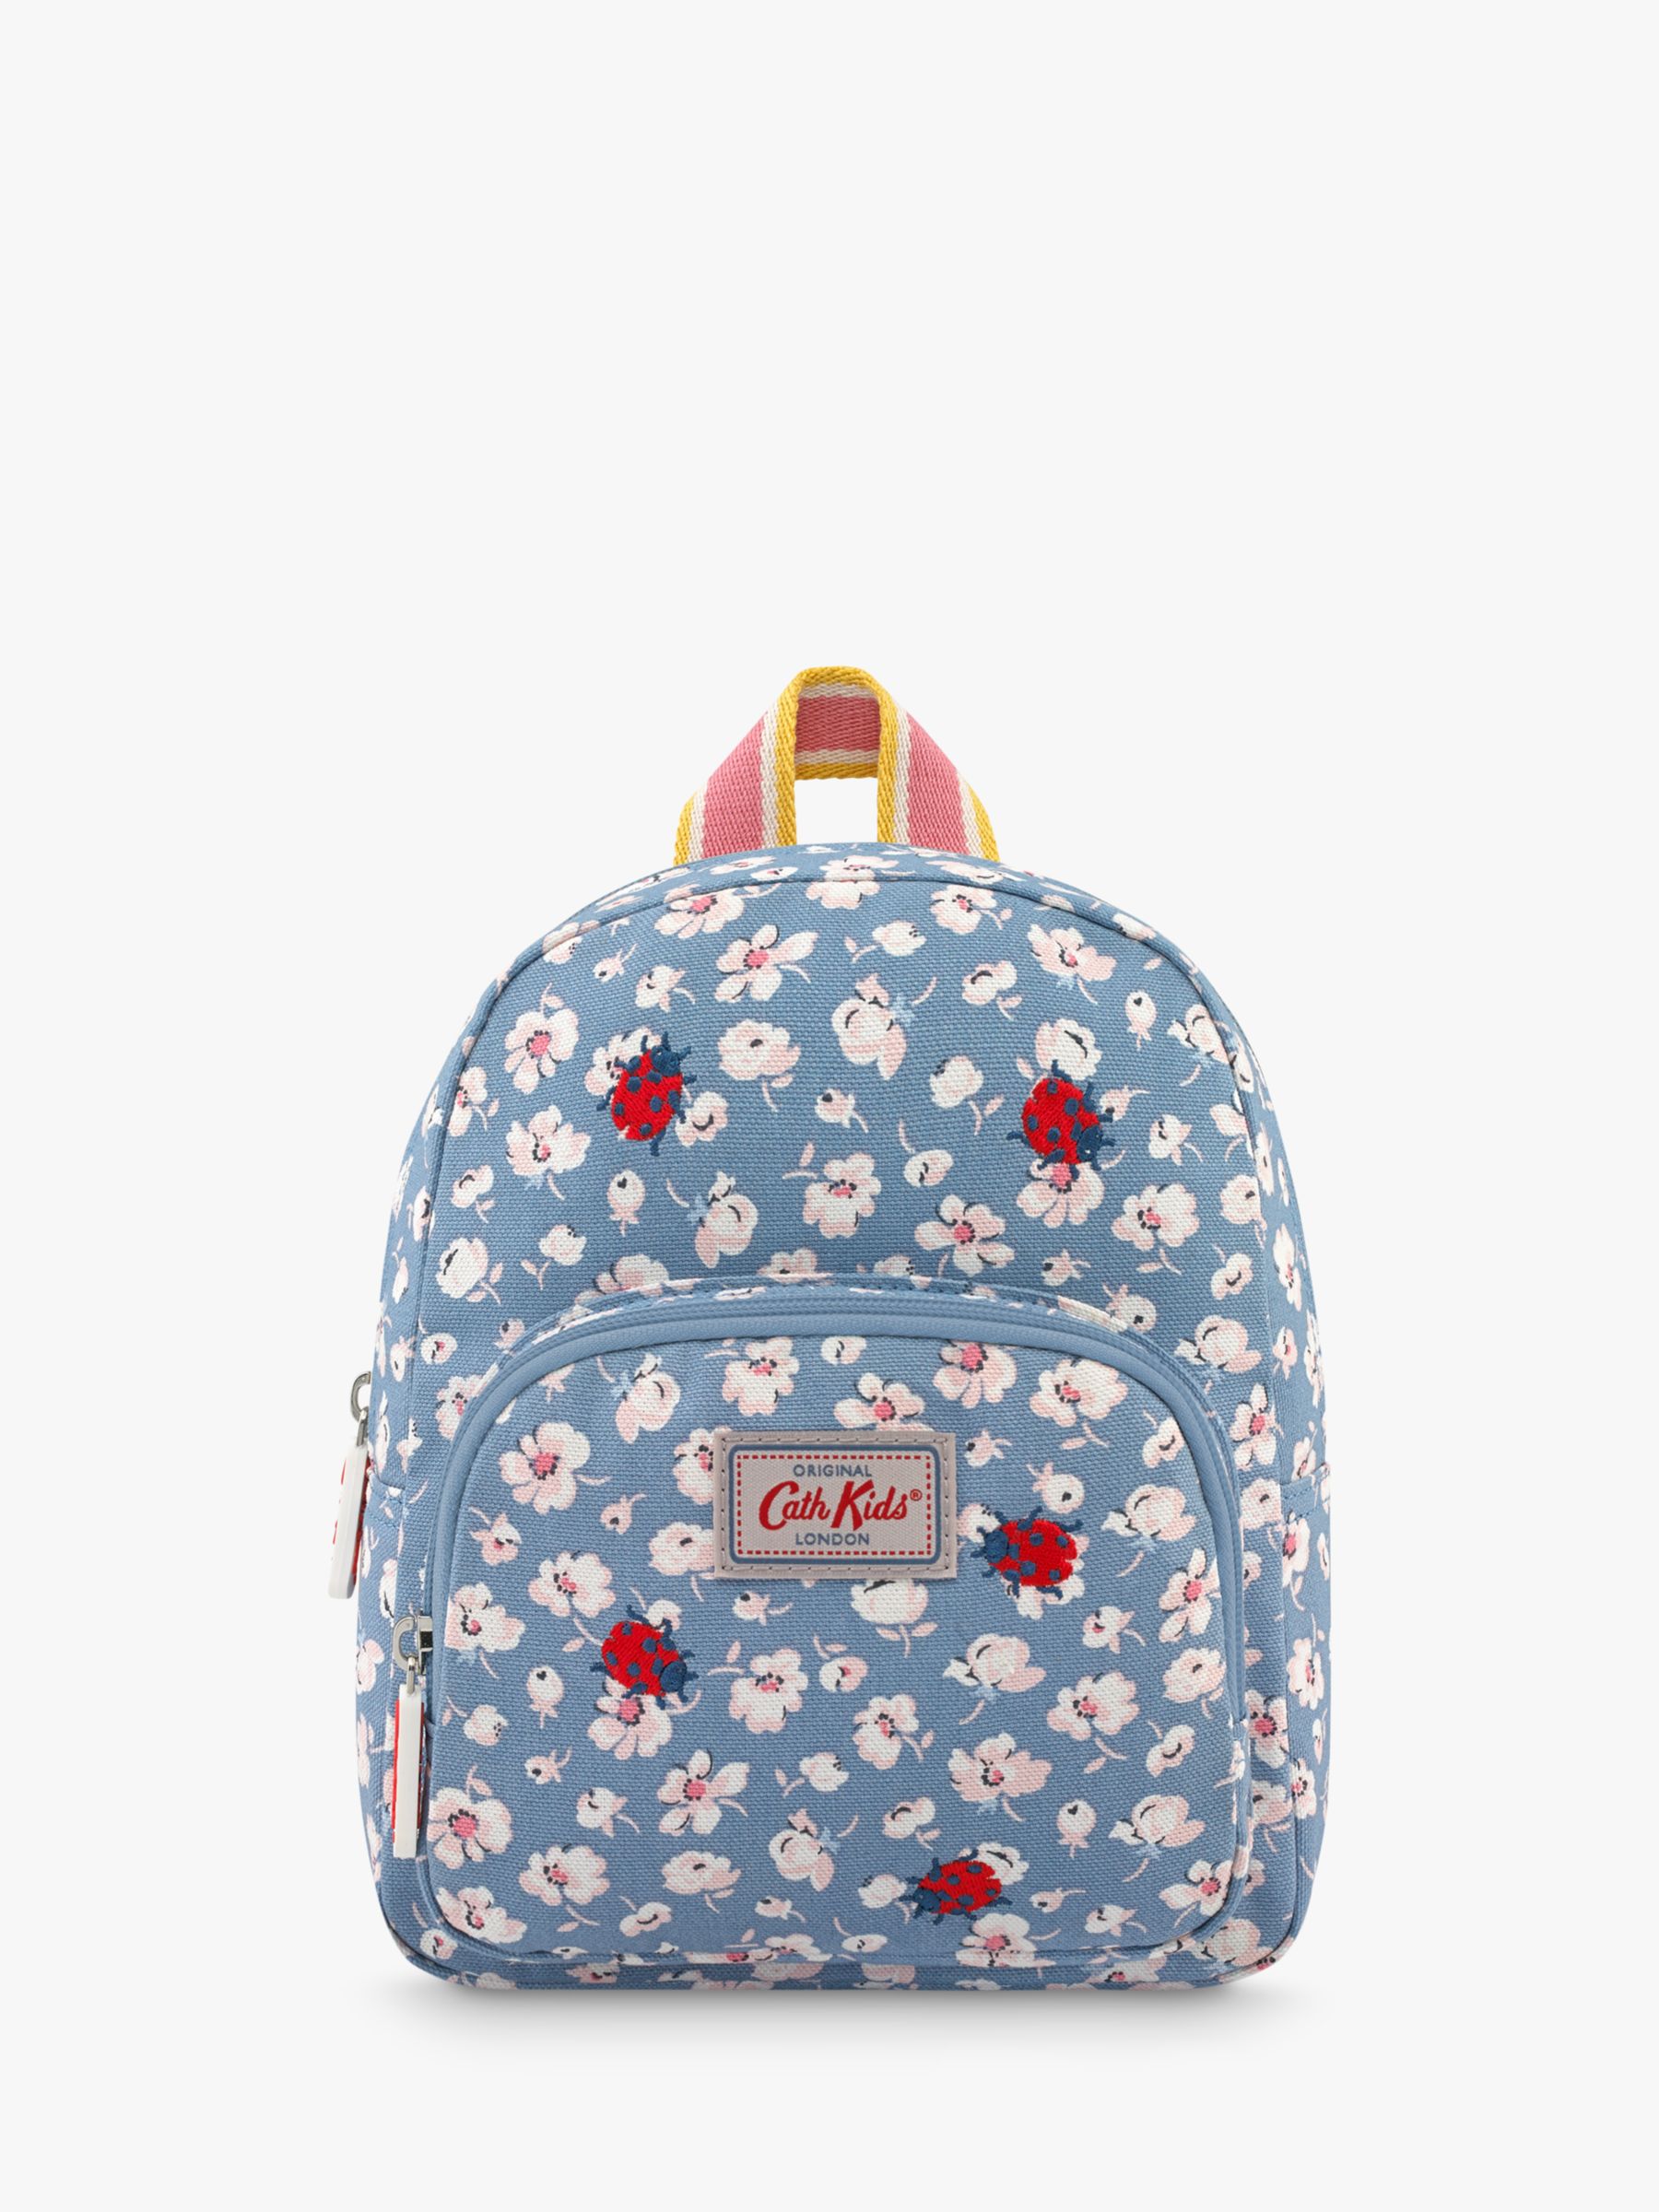 cath kidston mini backpack